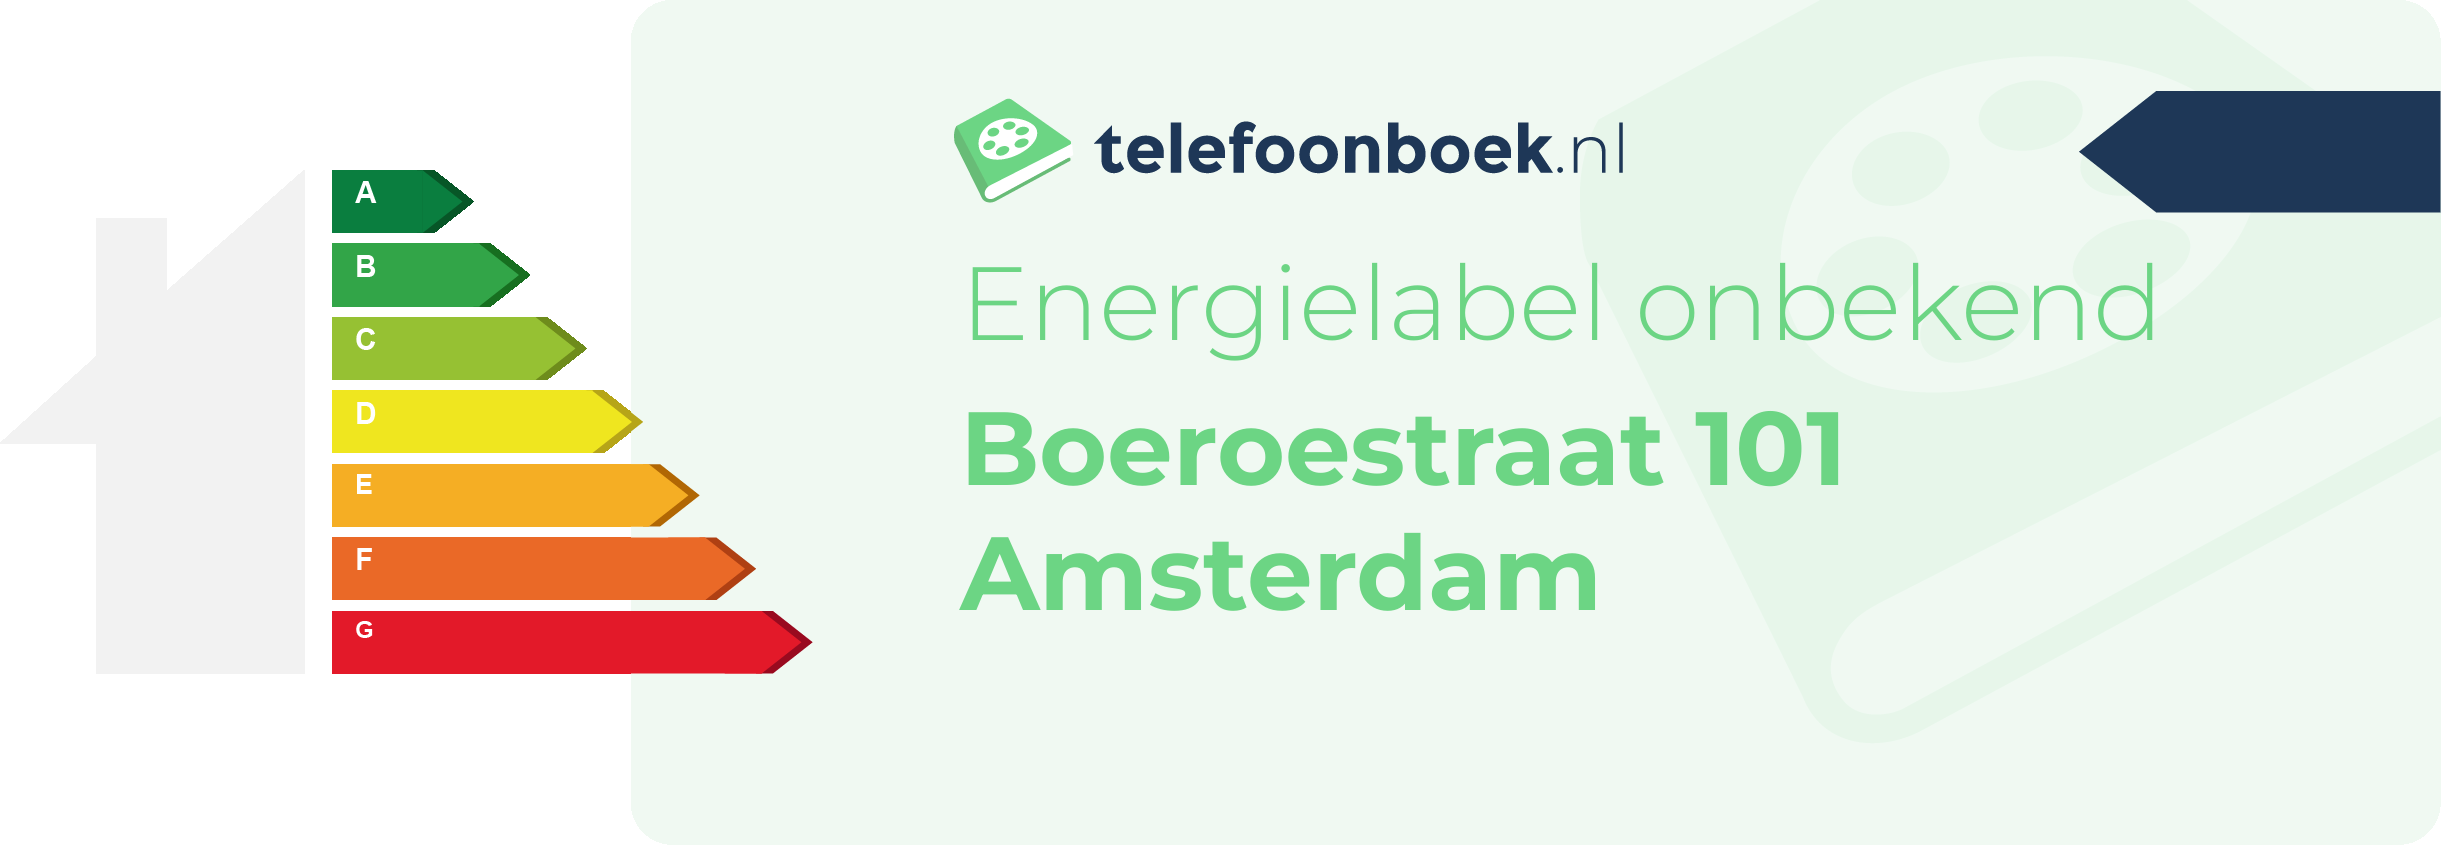 Energielabel Boeroestraat 101 Amsterdam